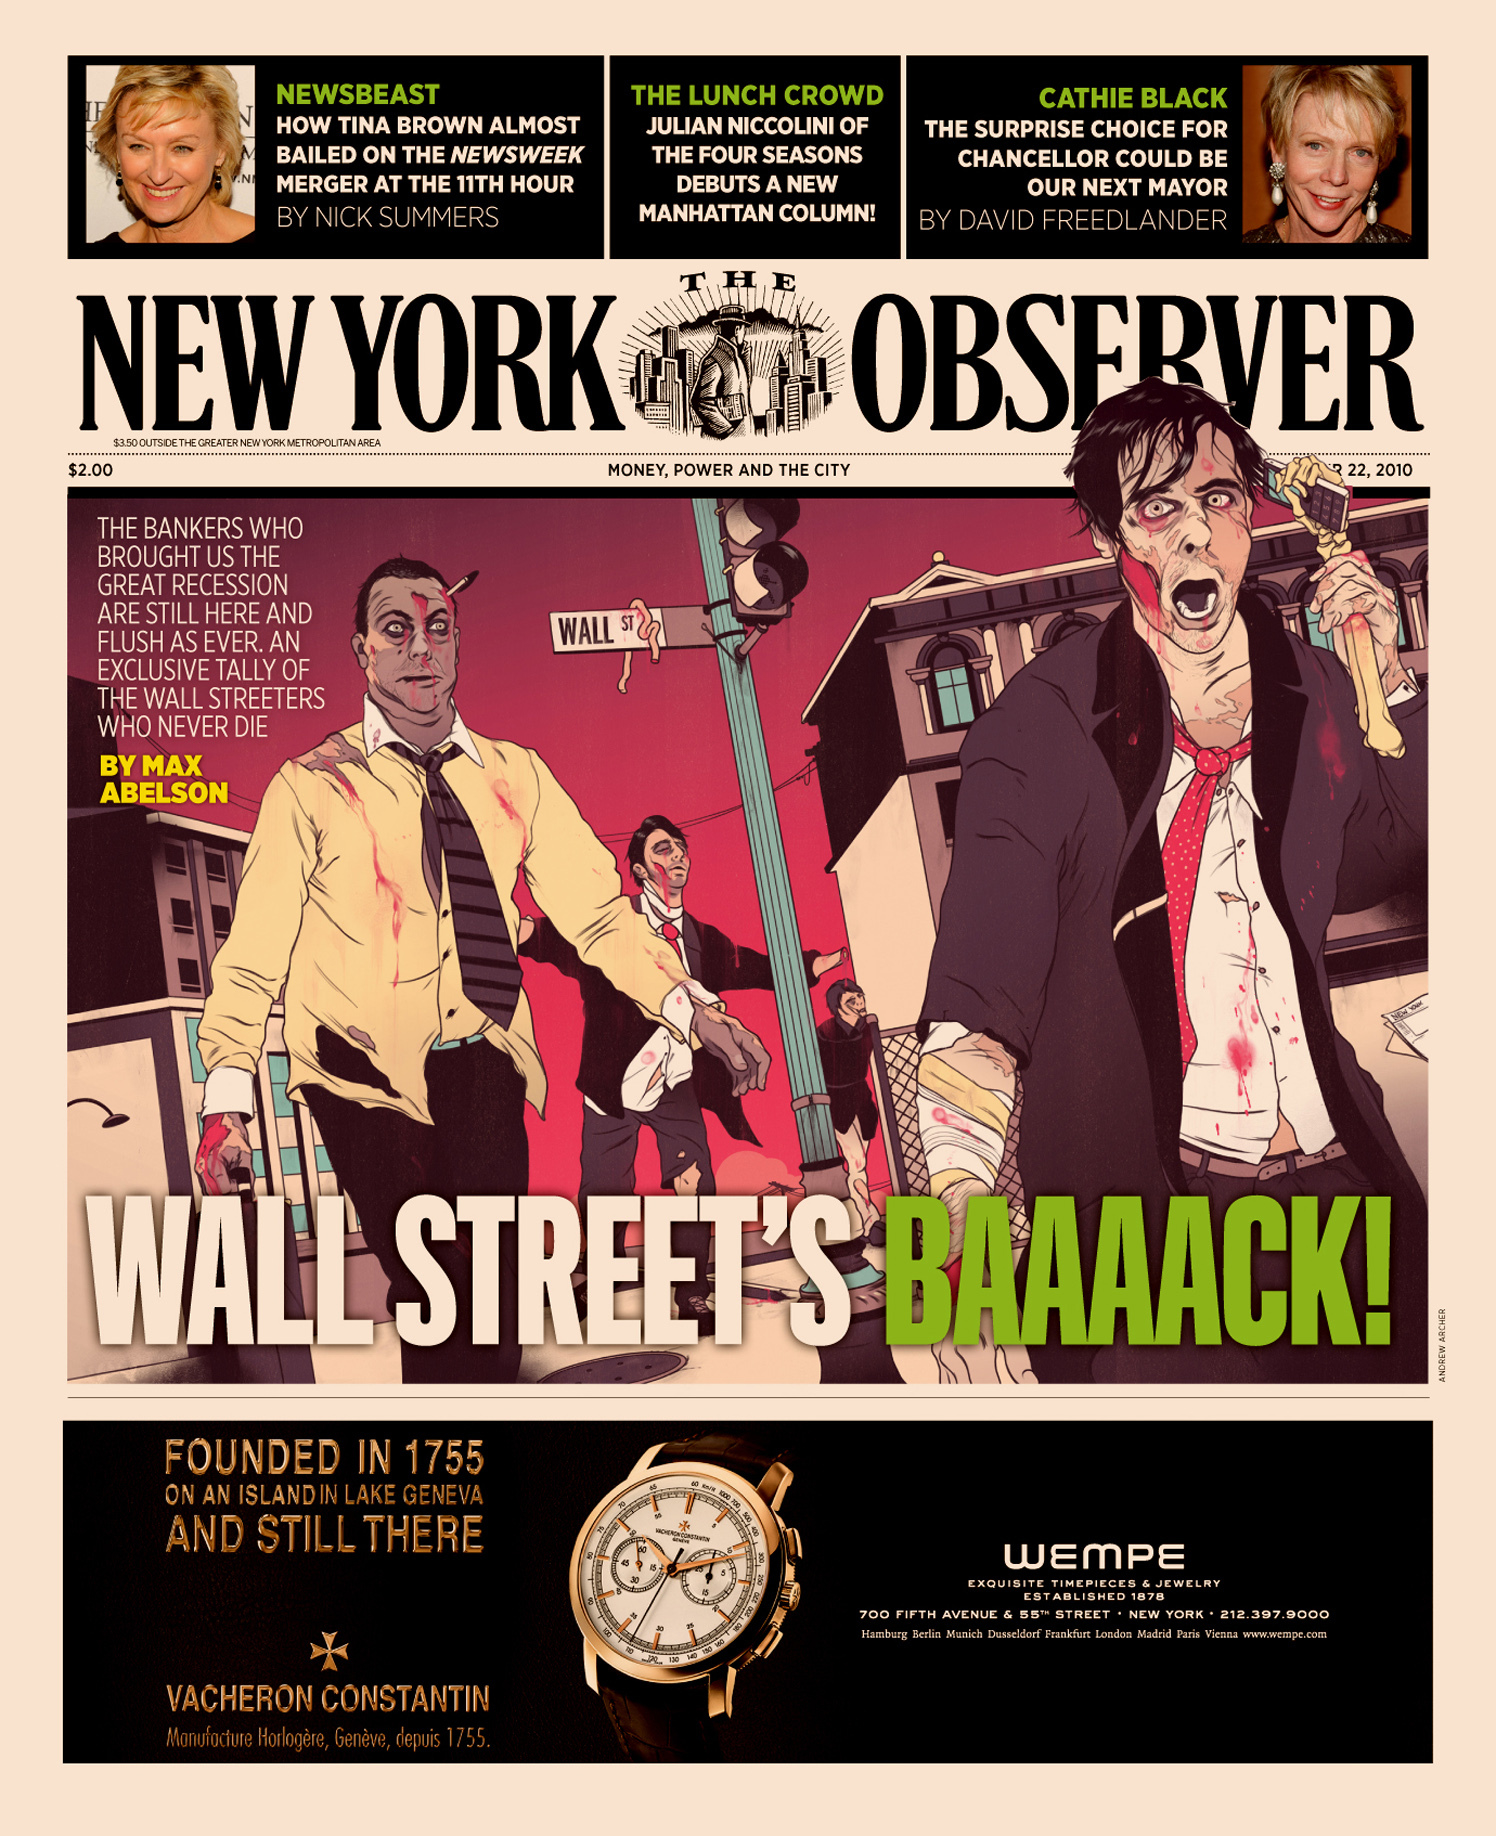 Wall Street's Baaaack! / The New York Observer